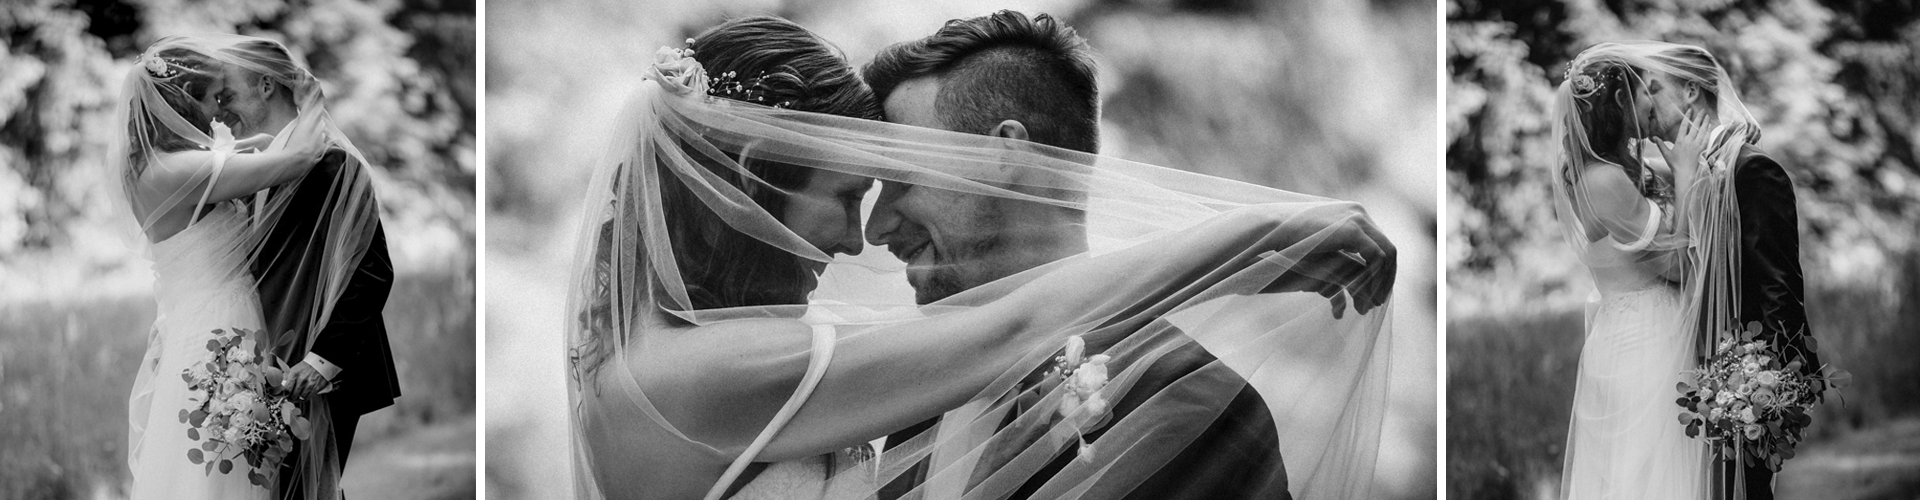 Brautpaar unter dem Schleier Fotograf Hochzeitsfotograf Rastatt Baden-Baden Karlsruhe